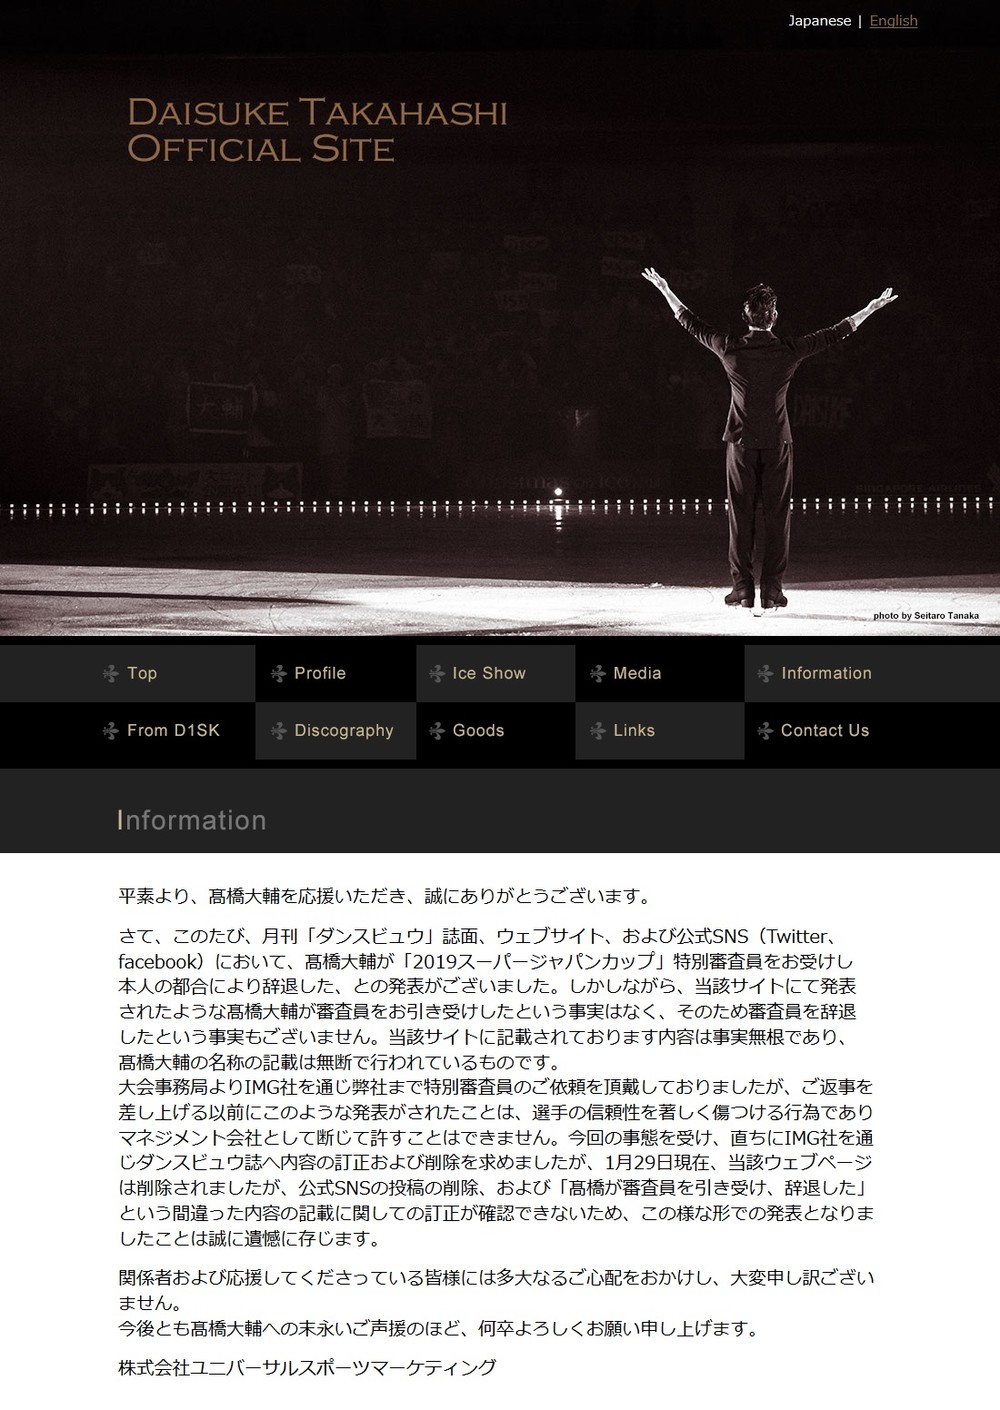 高橋大輔さんの公式サイトに、「特別審査員」をめぐる注意文が掲載された